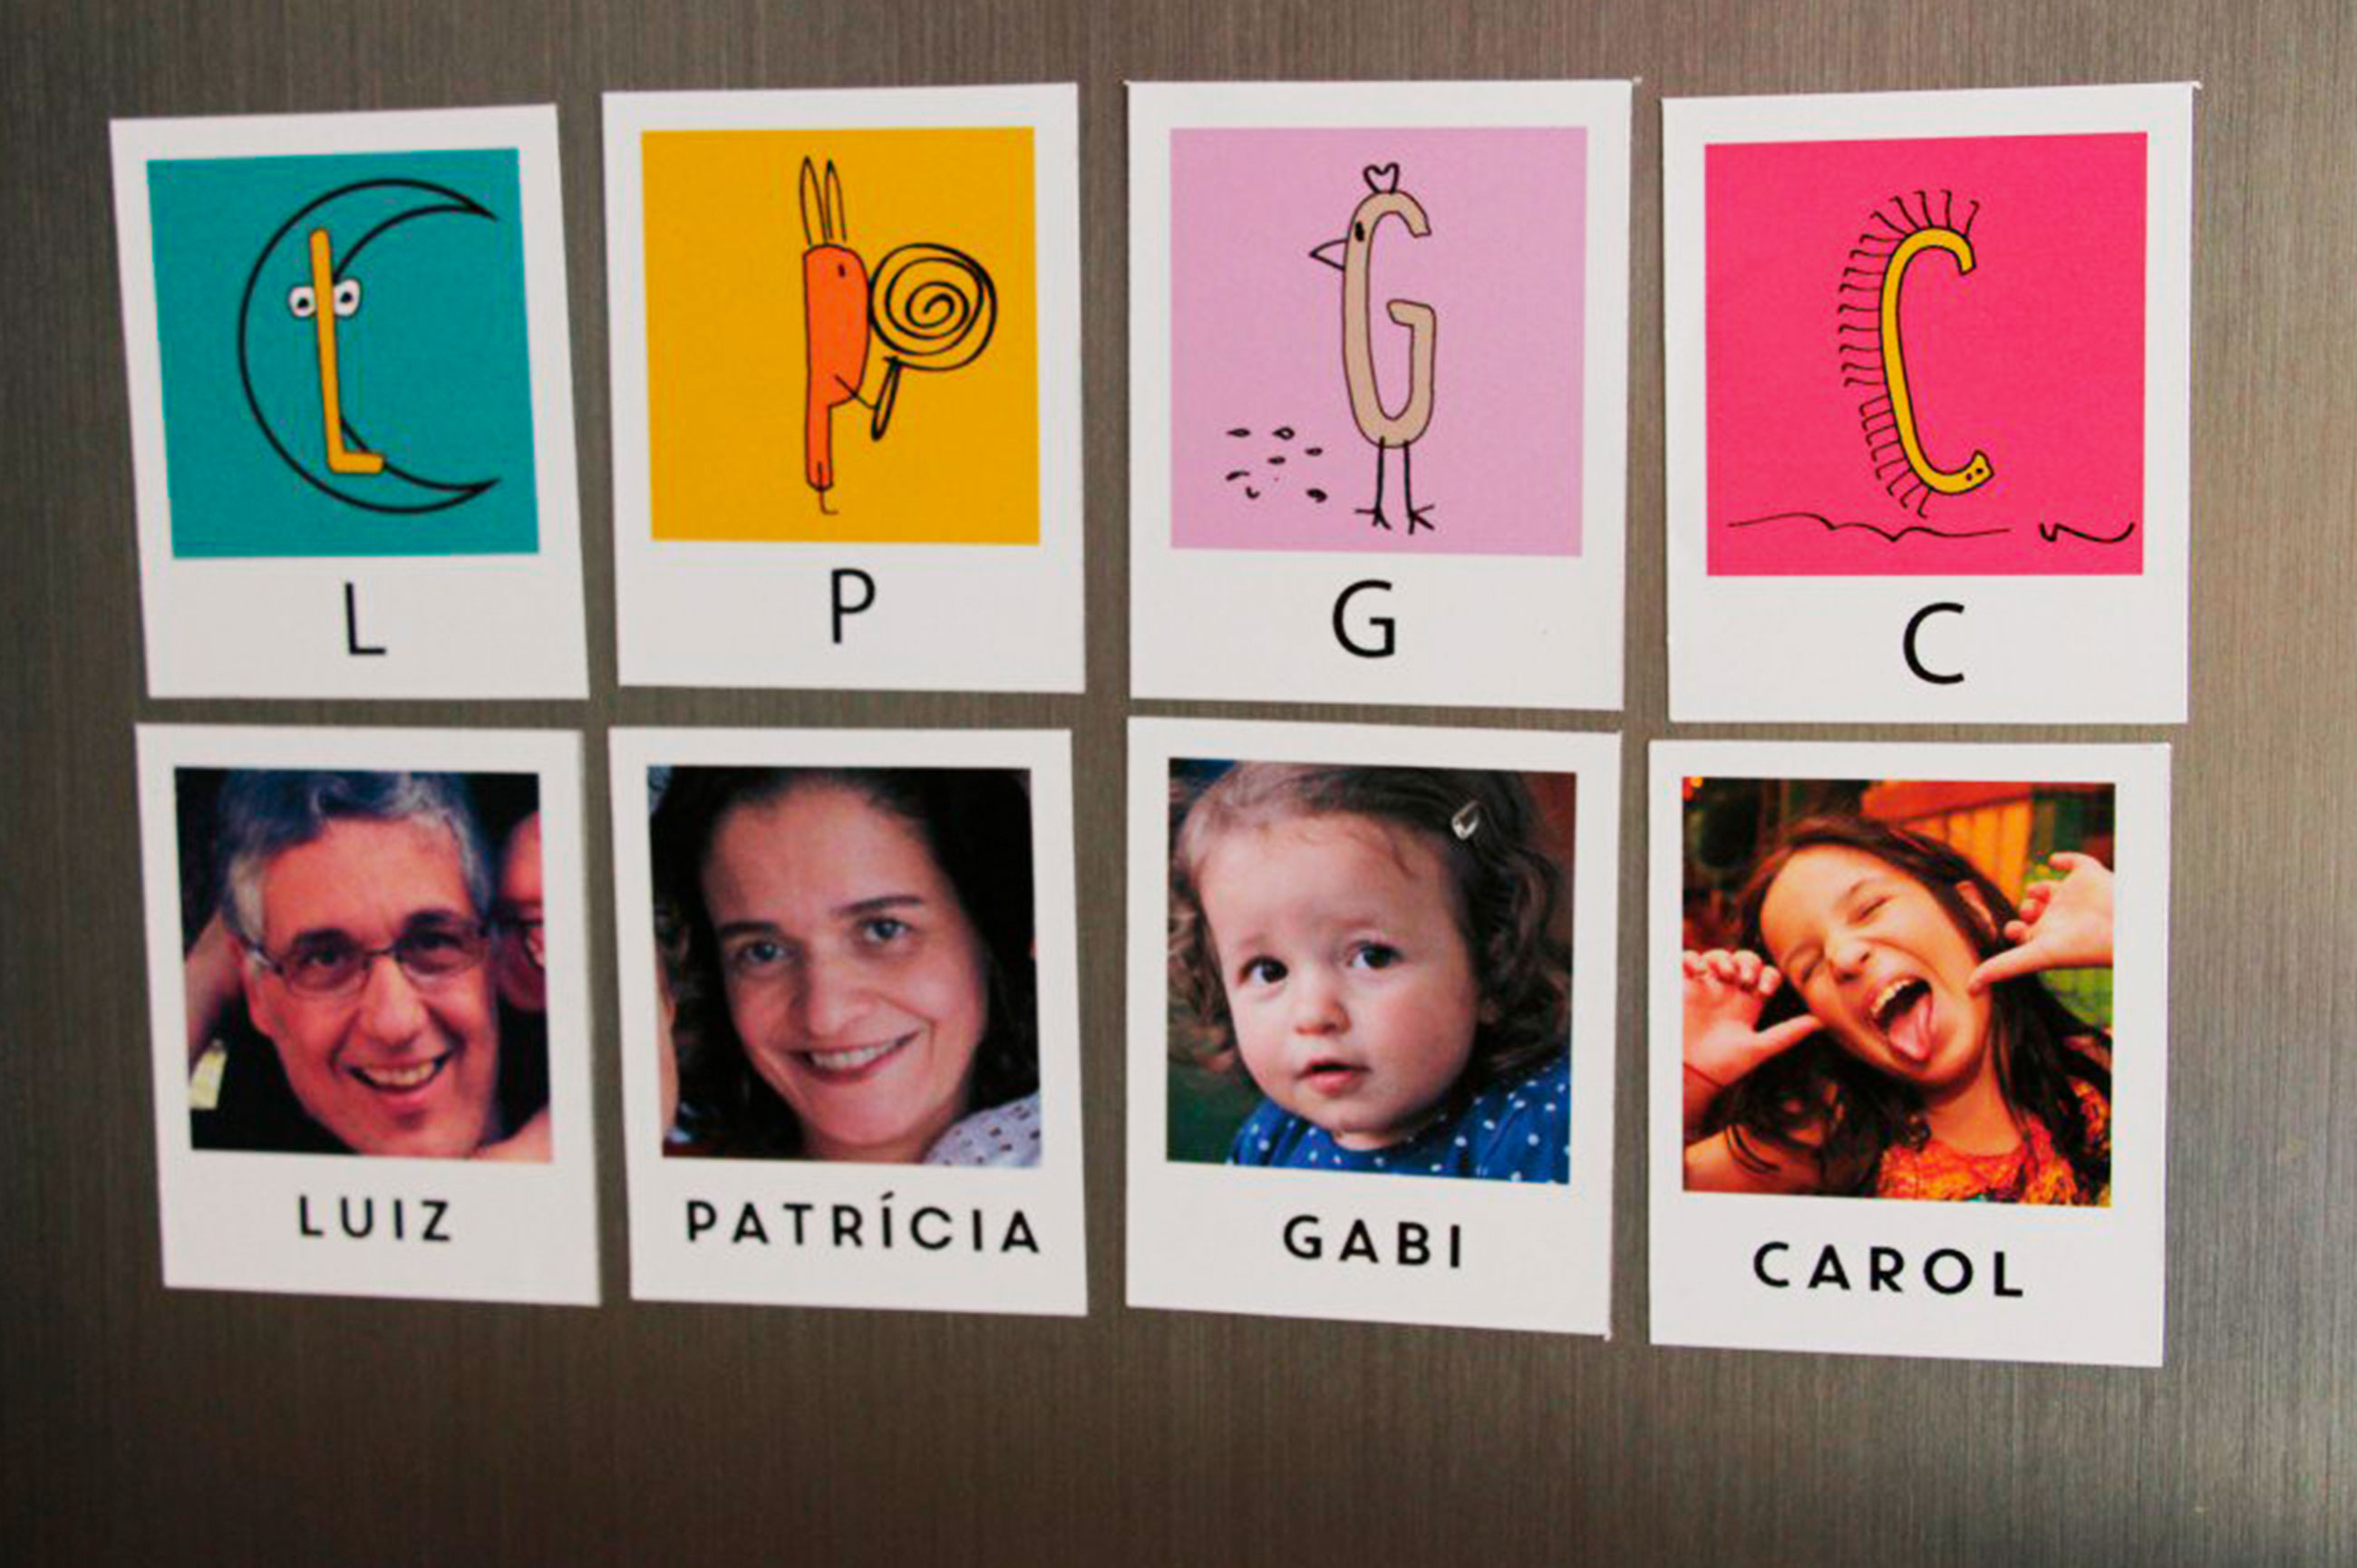 Diversos cartões coloridos, cada um com a foto de uma pessoa, seu nome e a primeira letra correspondente do seu nome